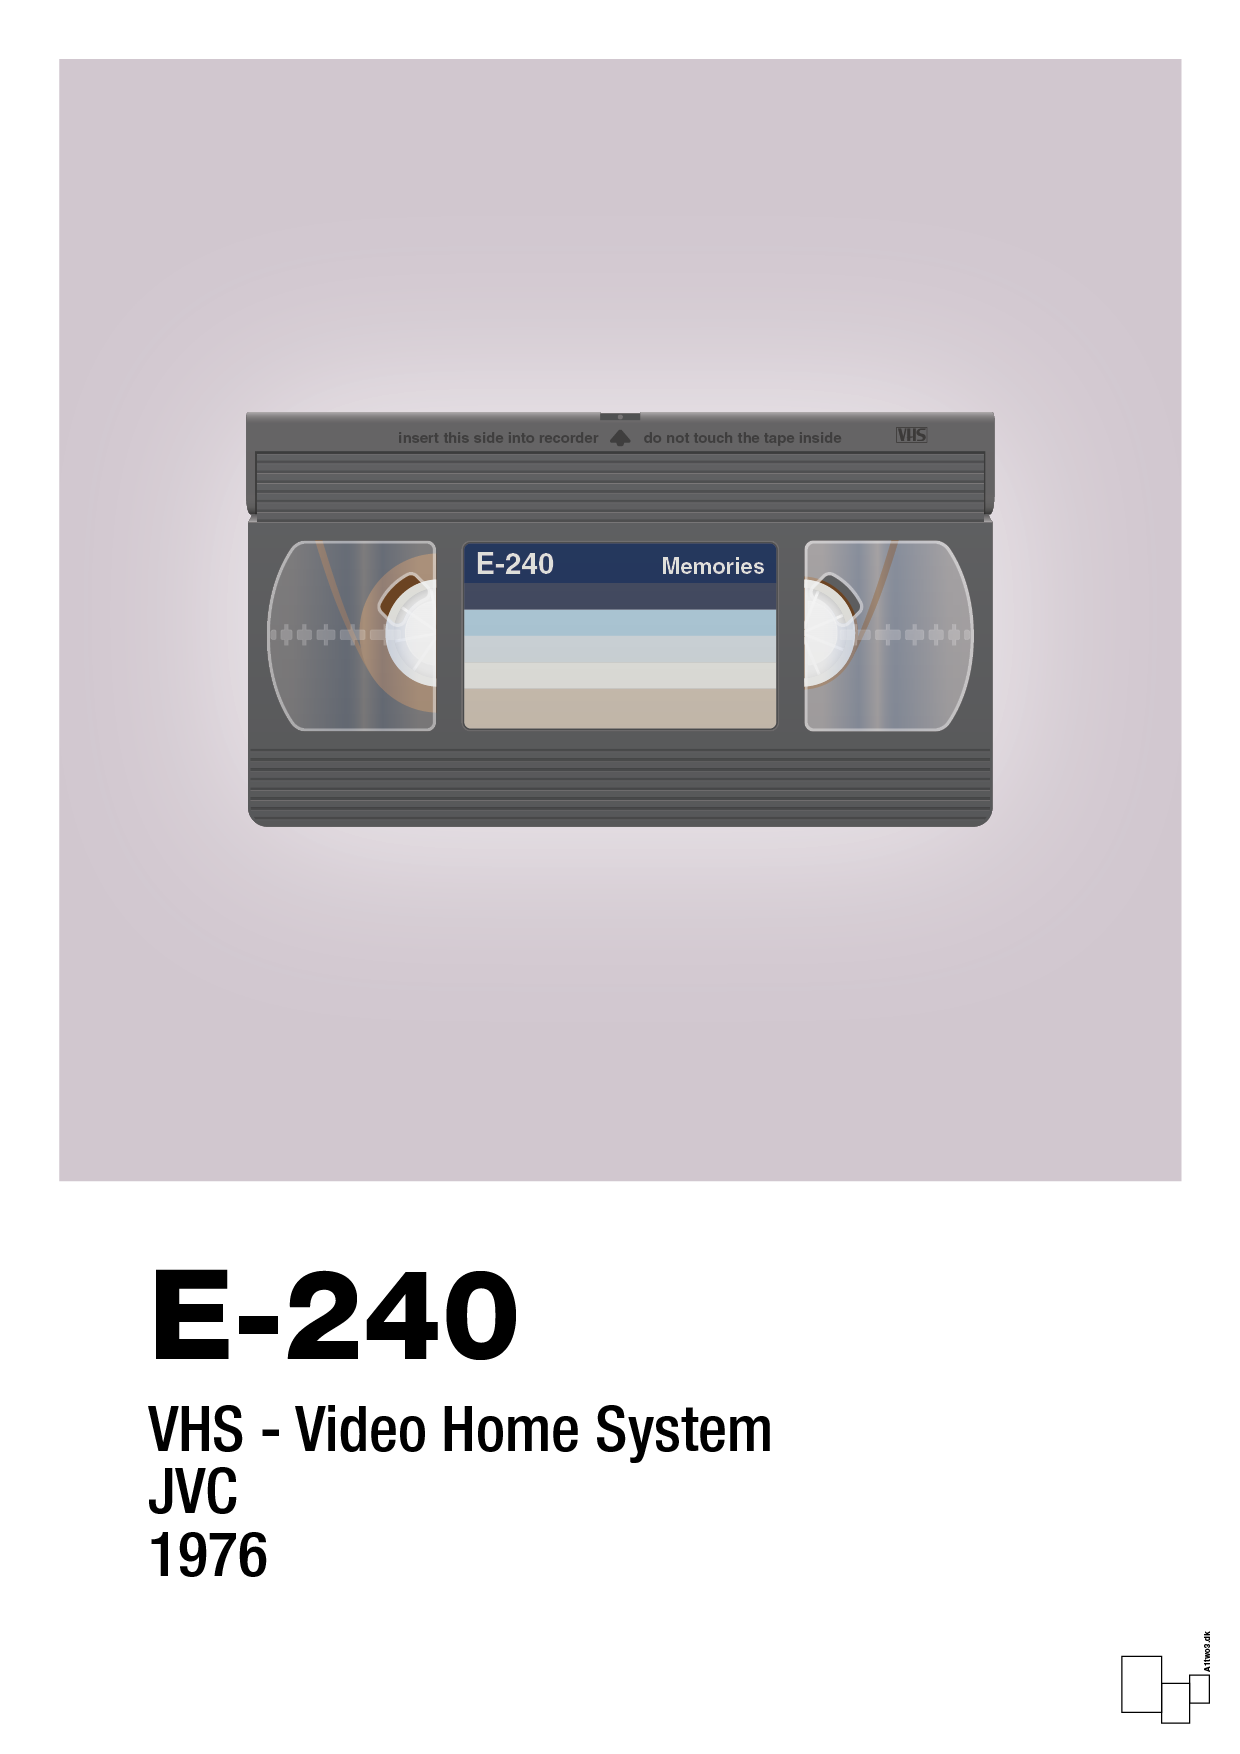 videobånd e-240 - Plakat med Grafik i Dusty Lilac